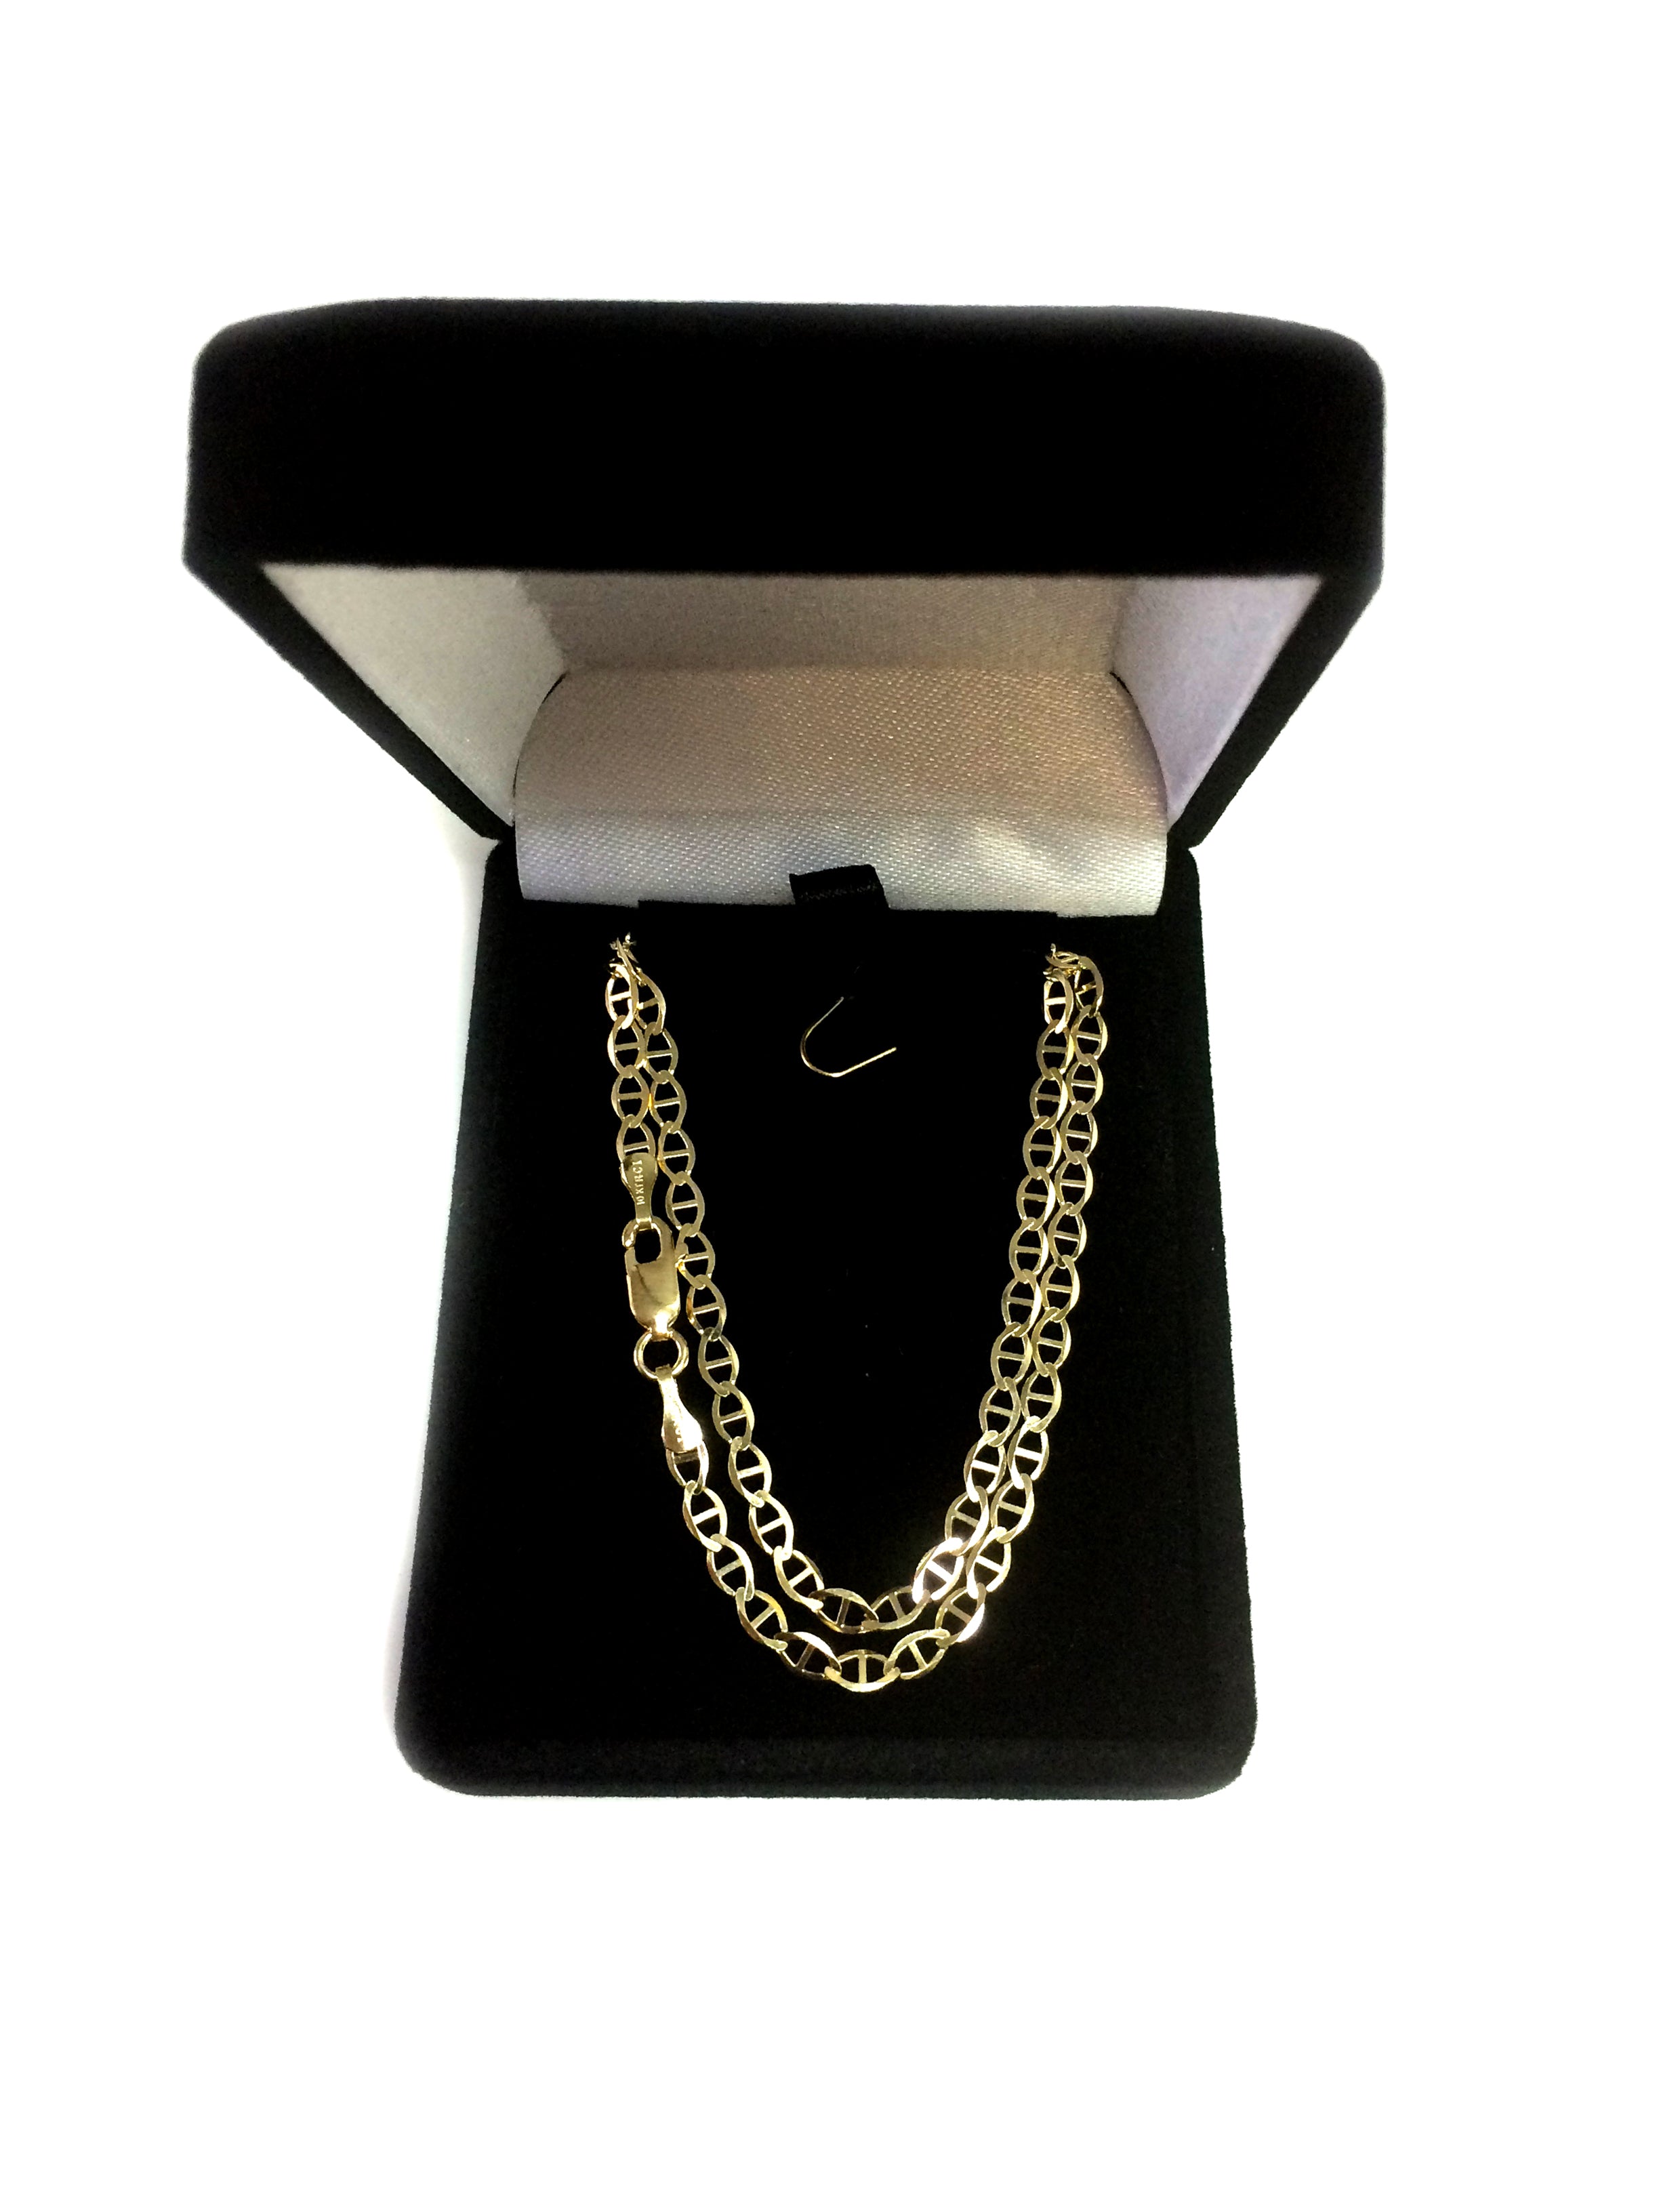 Collier chaîne à maillons Mariner en or jaune 10 carats, bijoux de créateur fins de 3,2 mm pour hommes et femmes